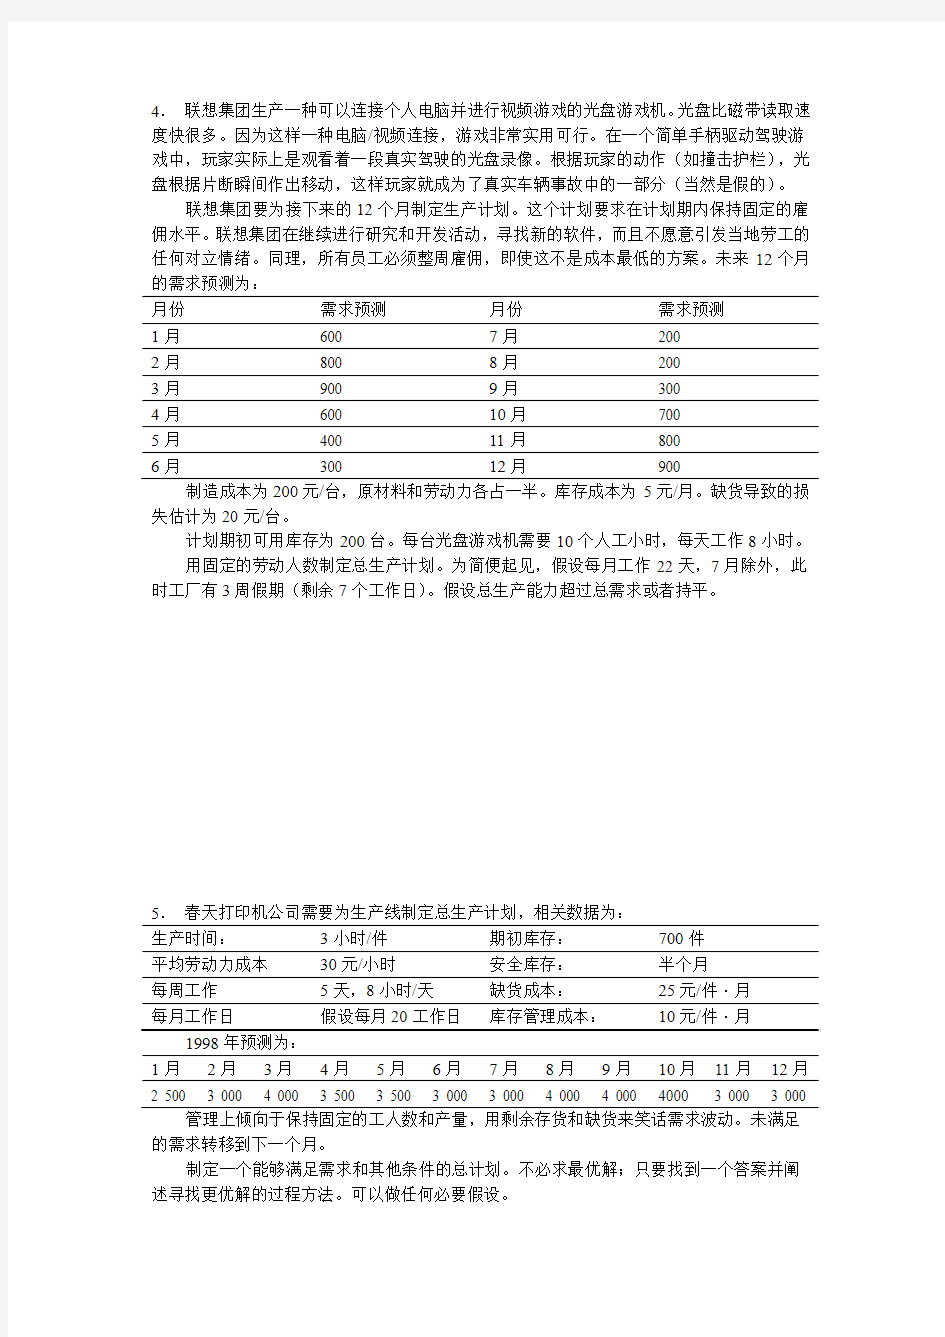 上海交通大学【综合计划】安泰经济与管理学院《运营管理》习题